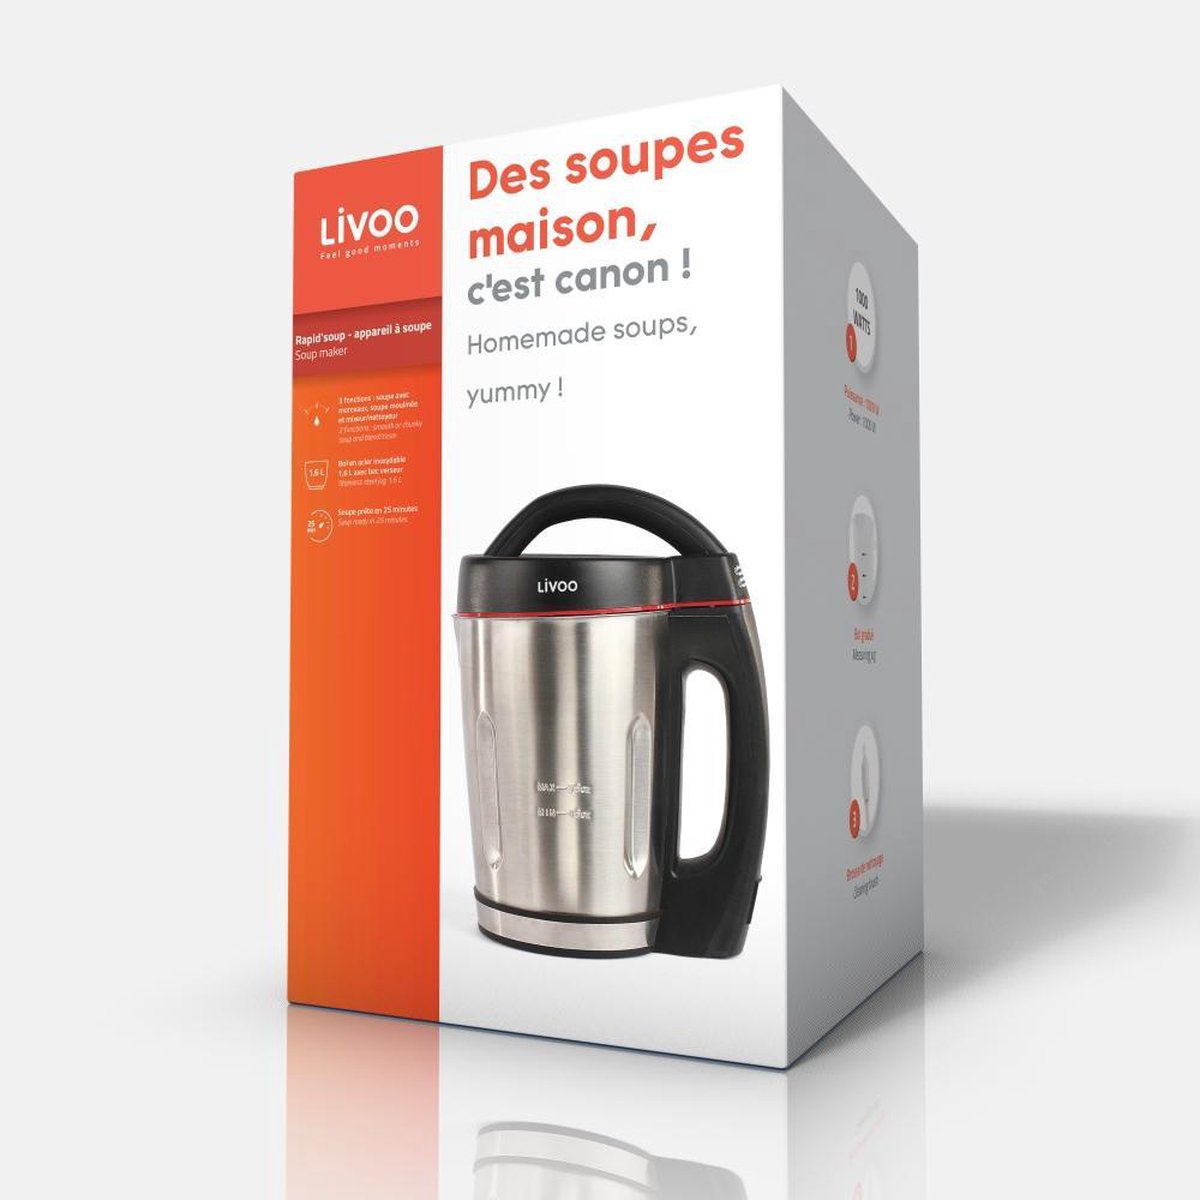 Livoo DOP121 Rapid'soup - Blender appareil à soupe 800 W